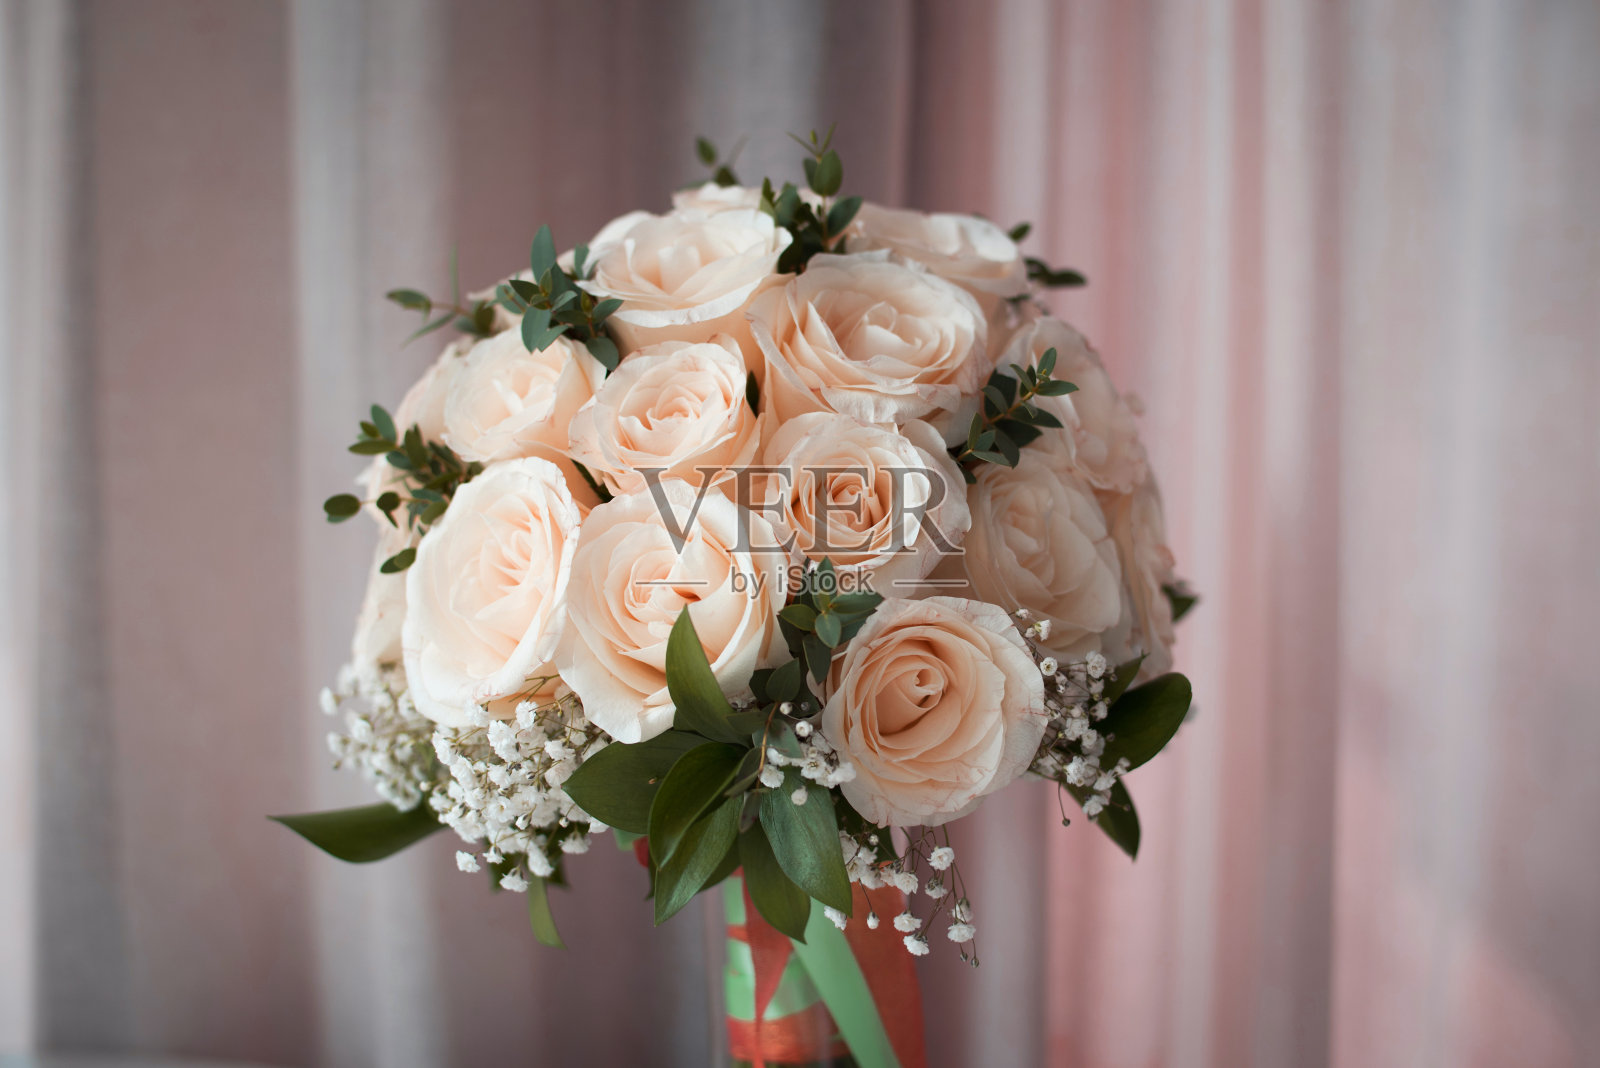 婚礼上新娘用的白玫瑰花束照片摄影图片